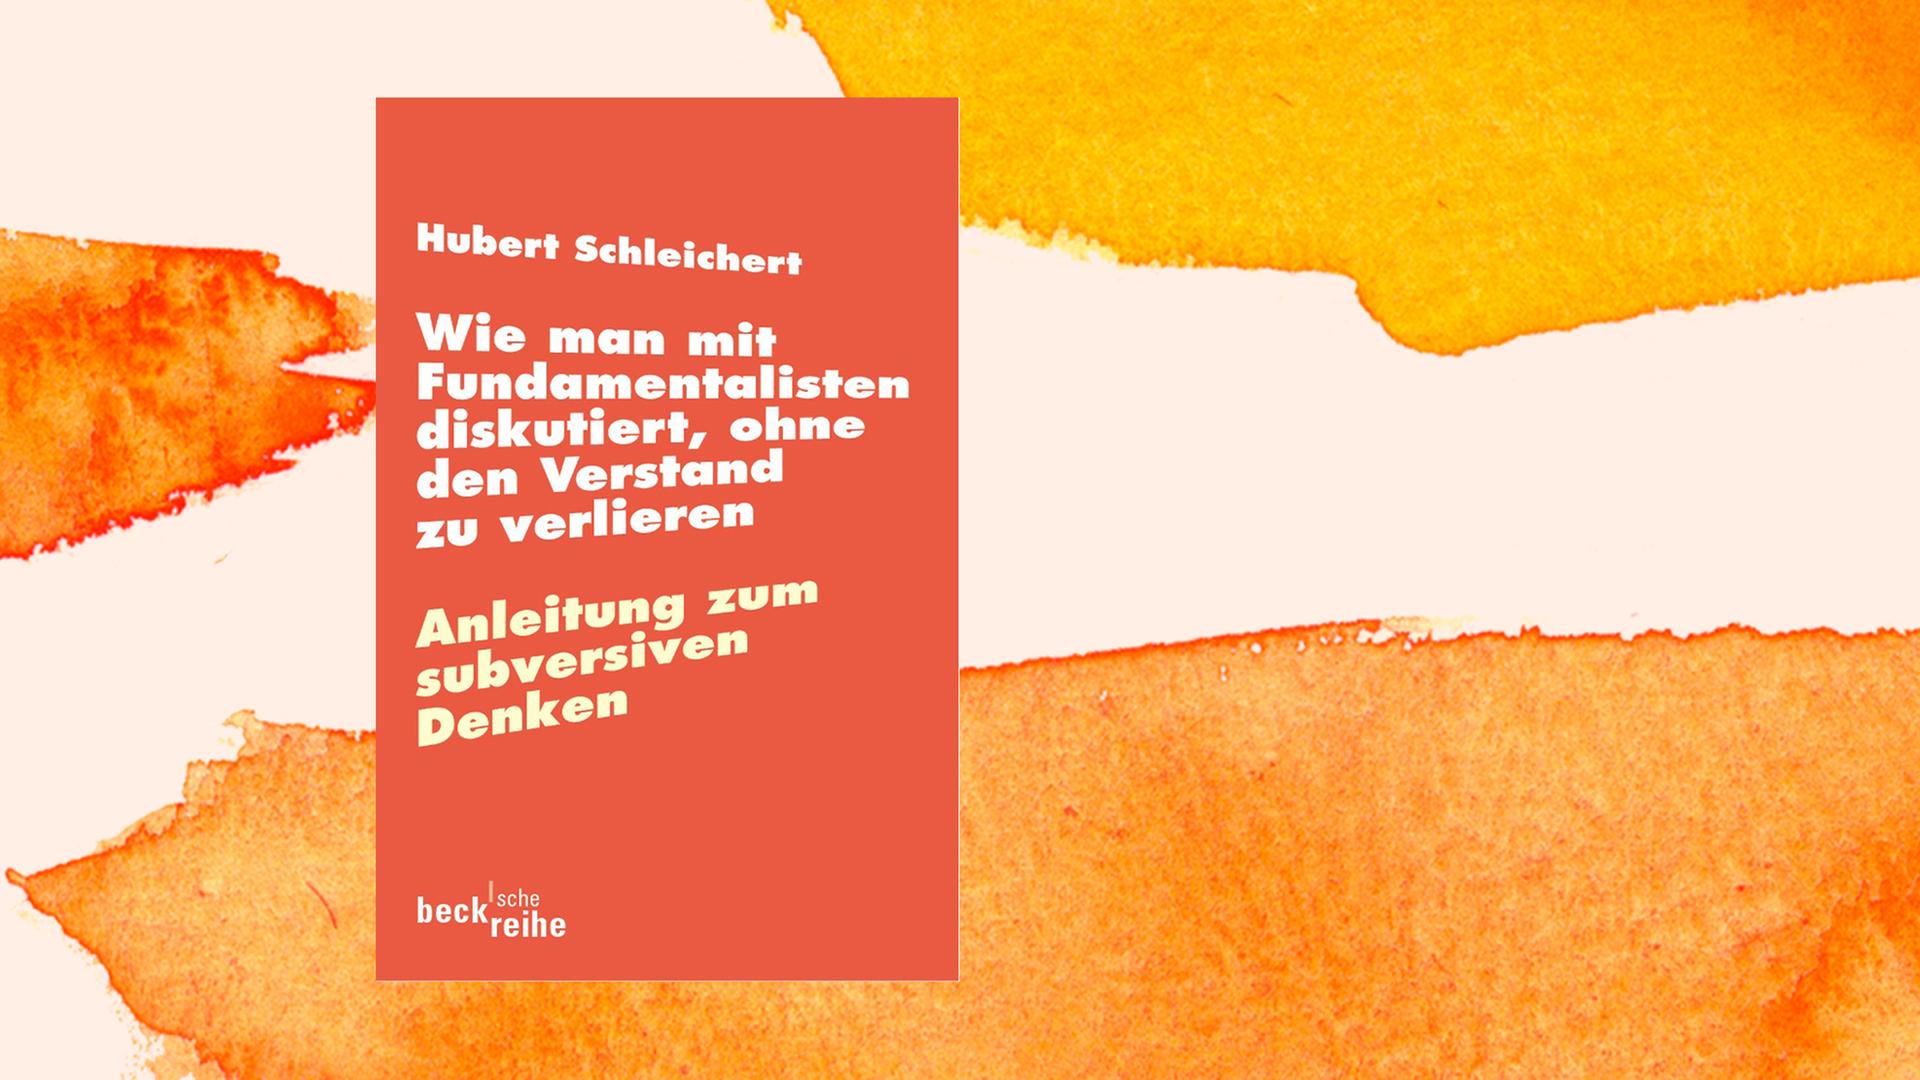 Buchcover von Hubert Schleicher: "Wie man mit Fundamentalisten diskutiert, ohne den Verstand zu verlieren", C.H. Beck.